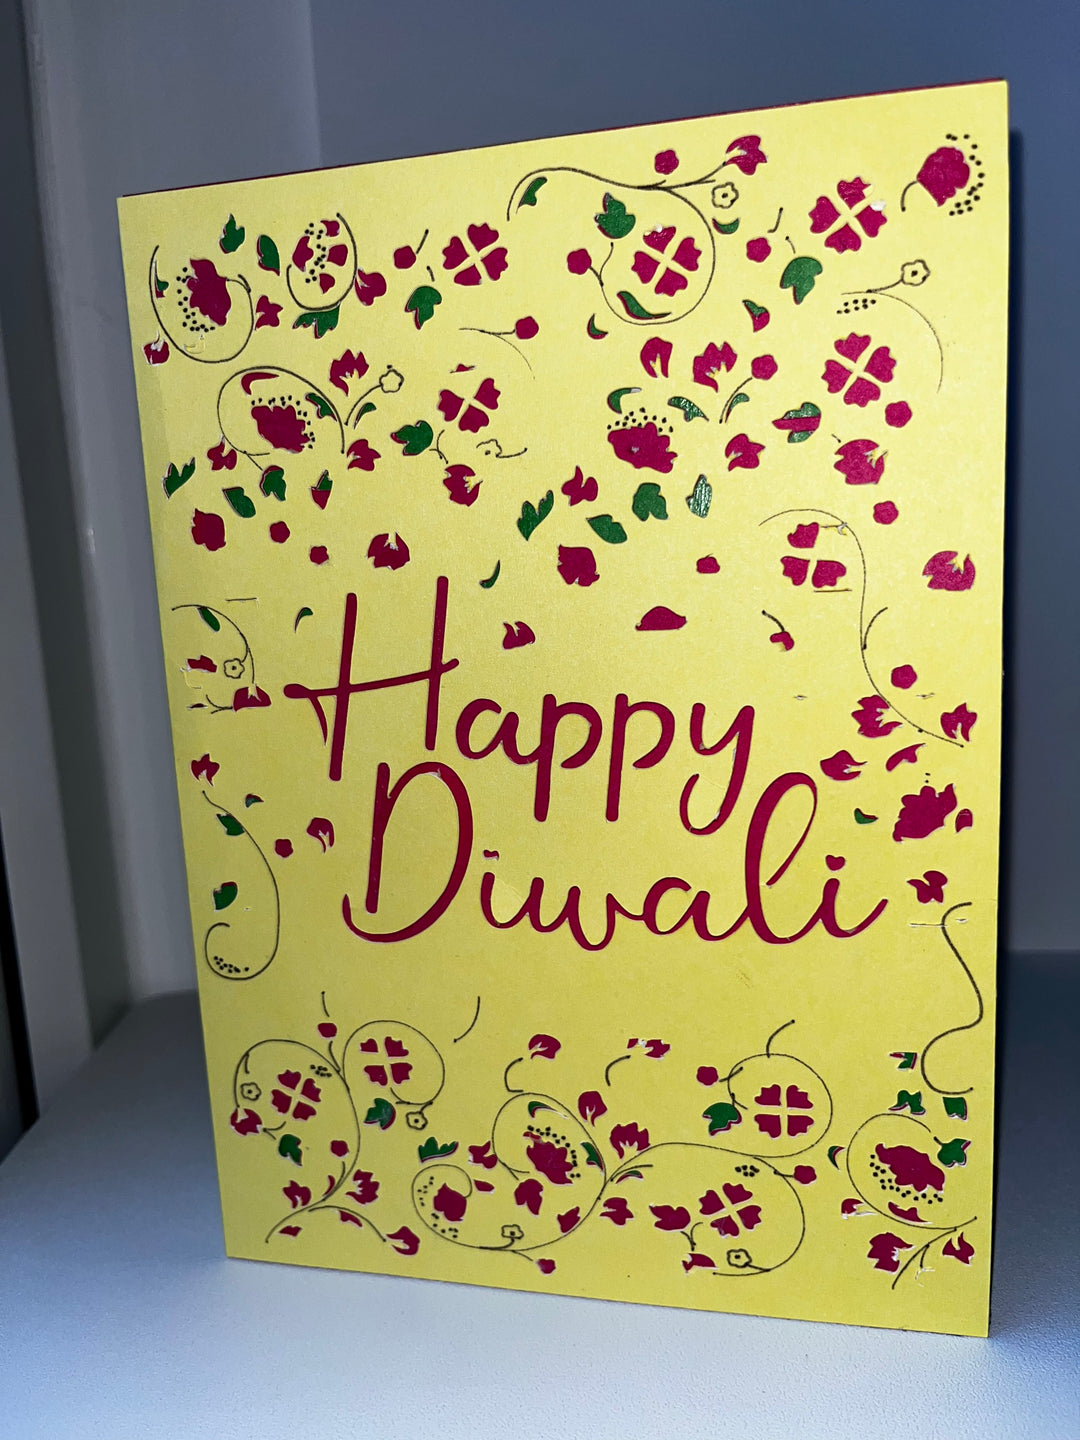 Diwali cut out card